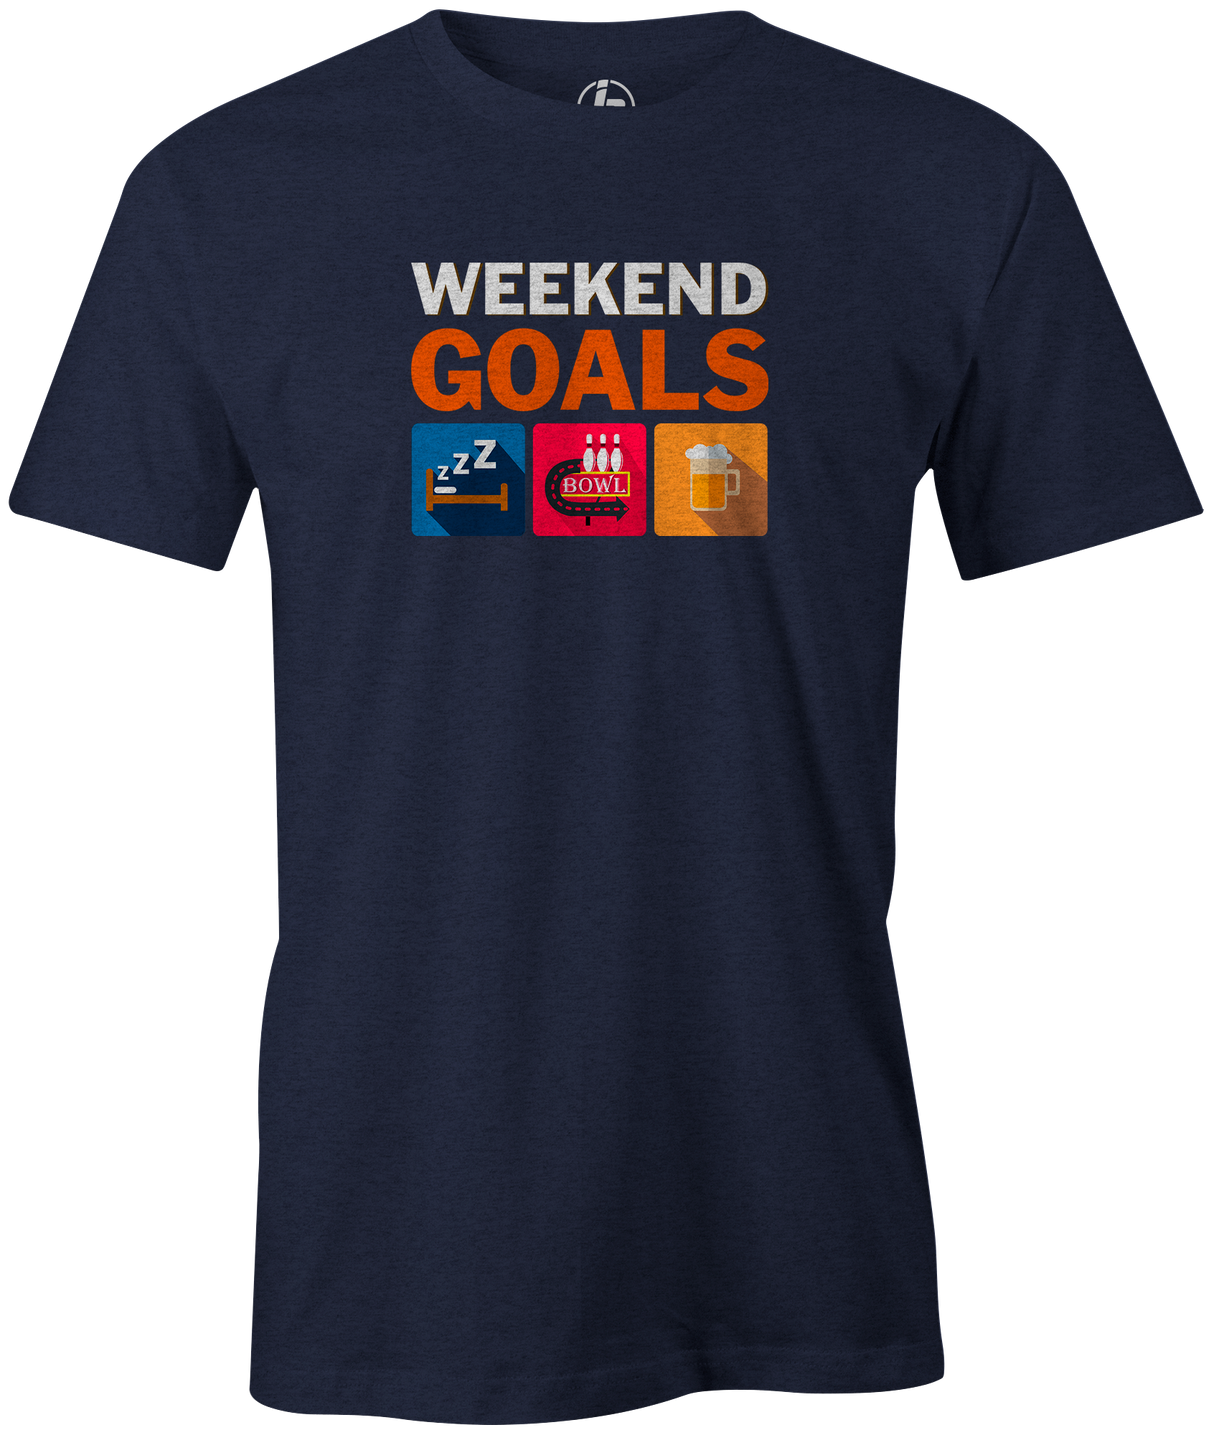 Weekend Goals Men's T-shirt, Navy, Bowling, tshirt, tee, tee-shirt, tee shirt